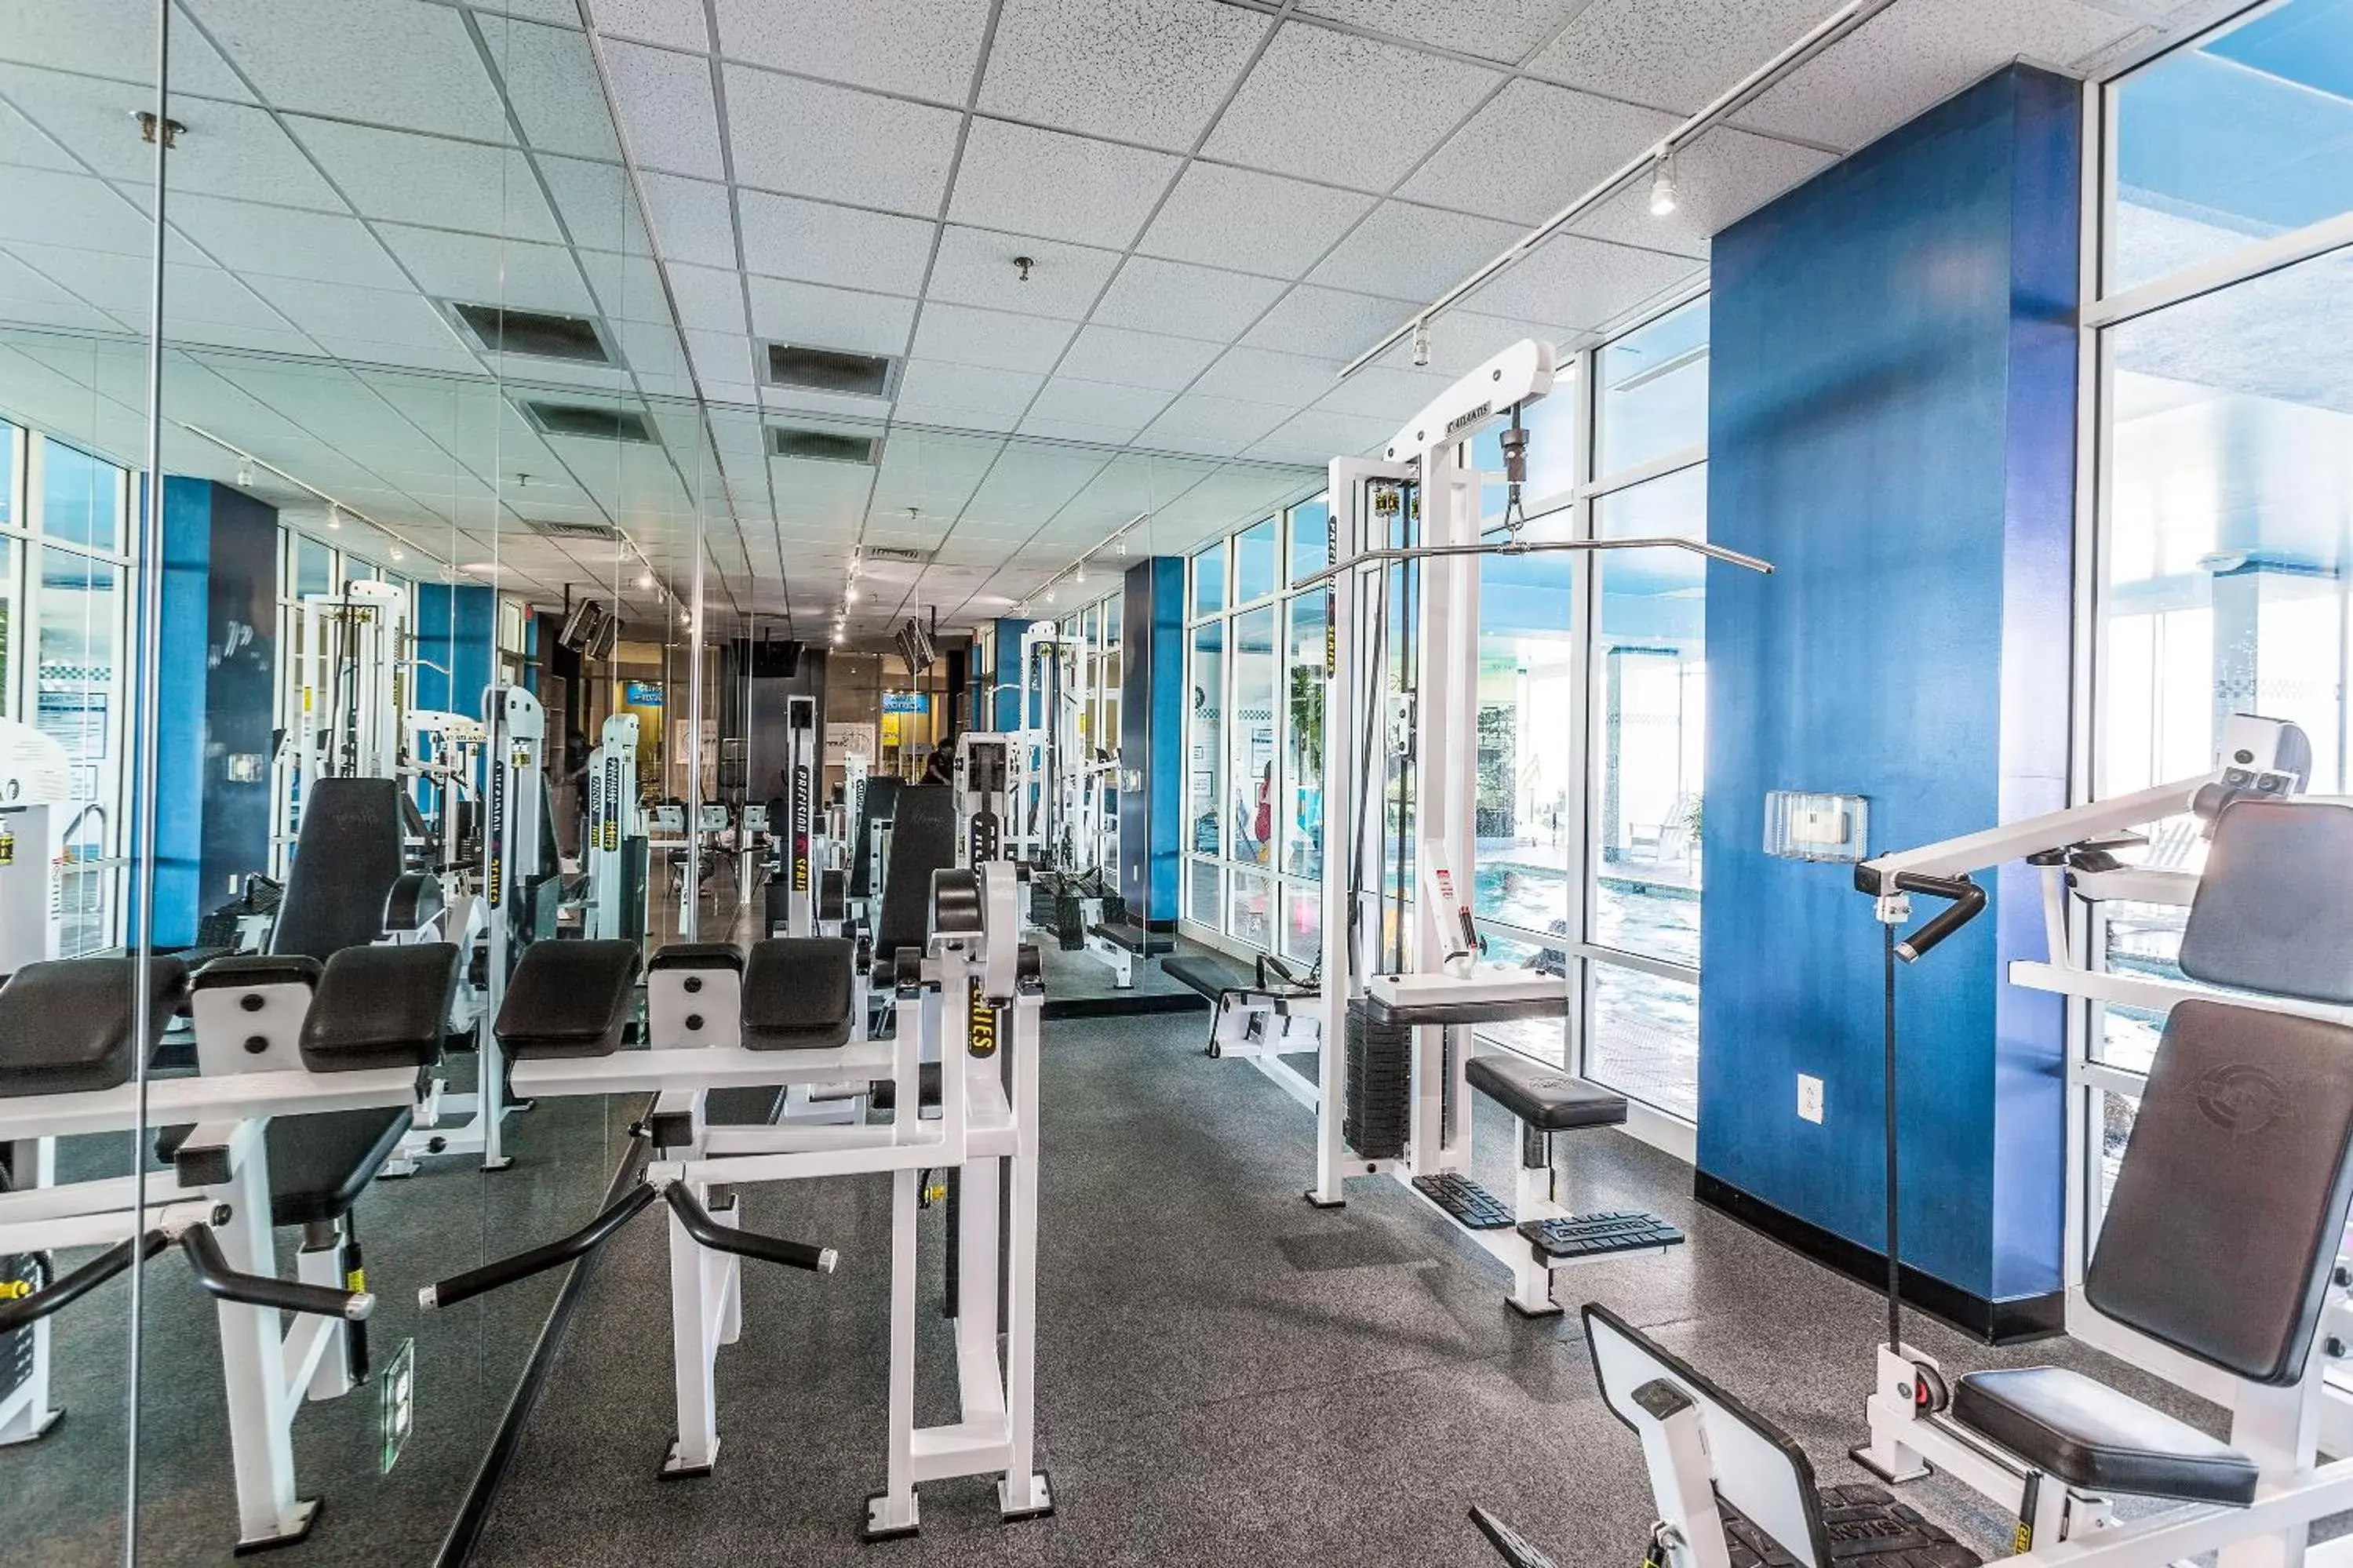 Fitness centre/facilities, Fitness Center/Facilities in Boardwalk Resort and Villas